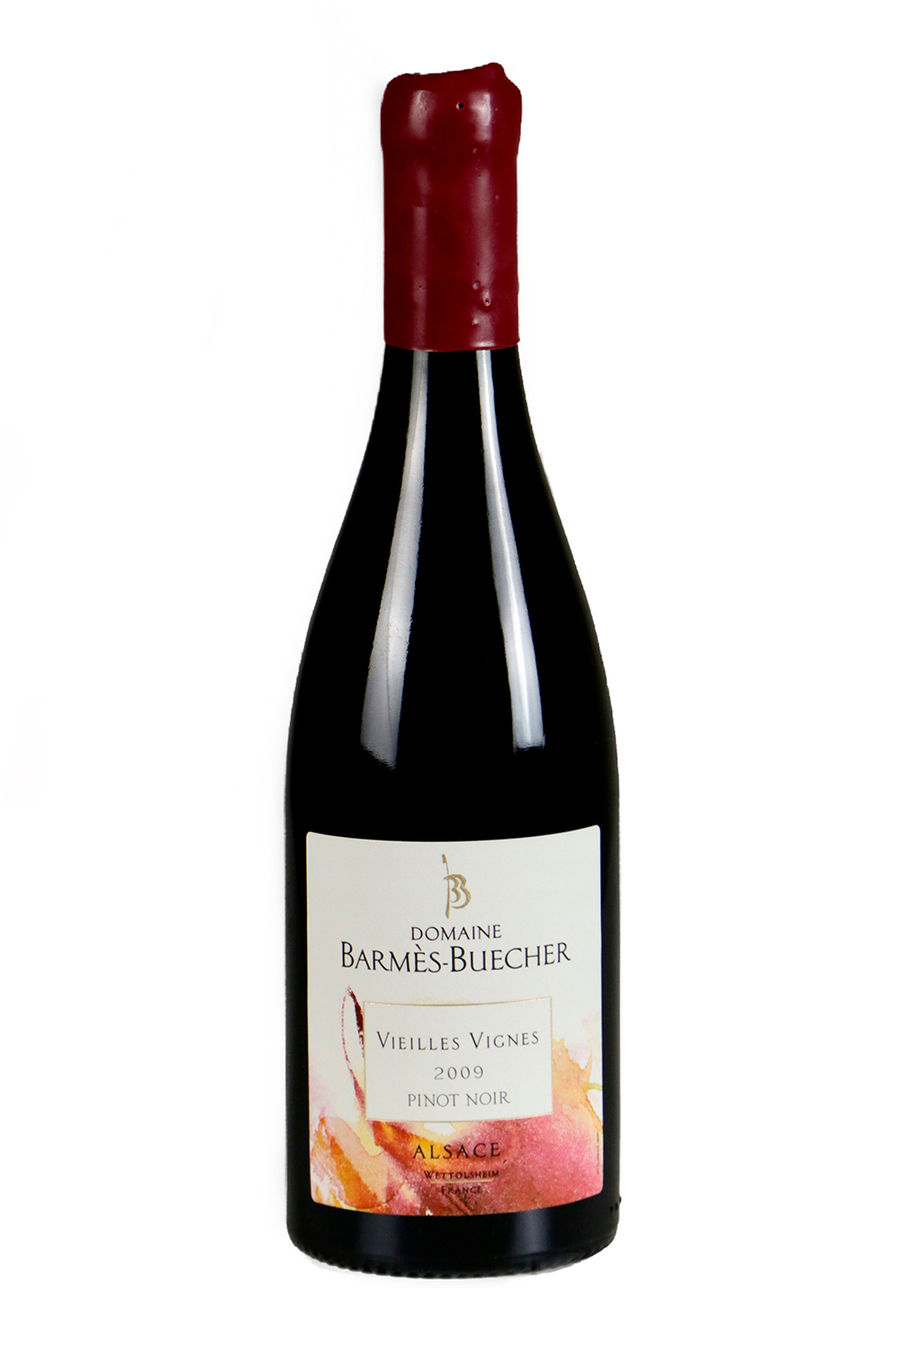 Barmés Buecher Pinot Noir Vieilles Vignes 2009